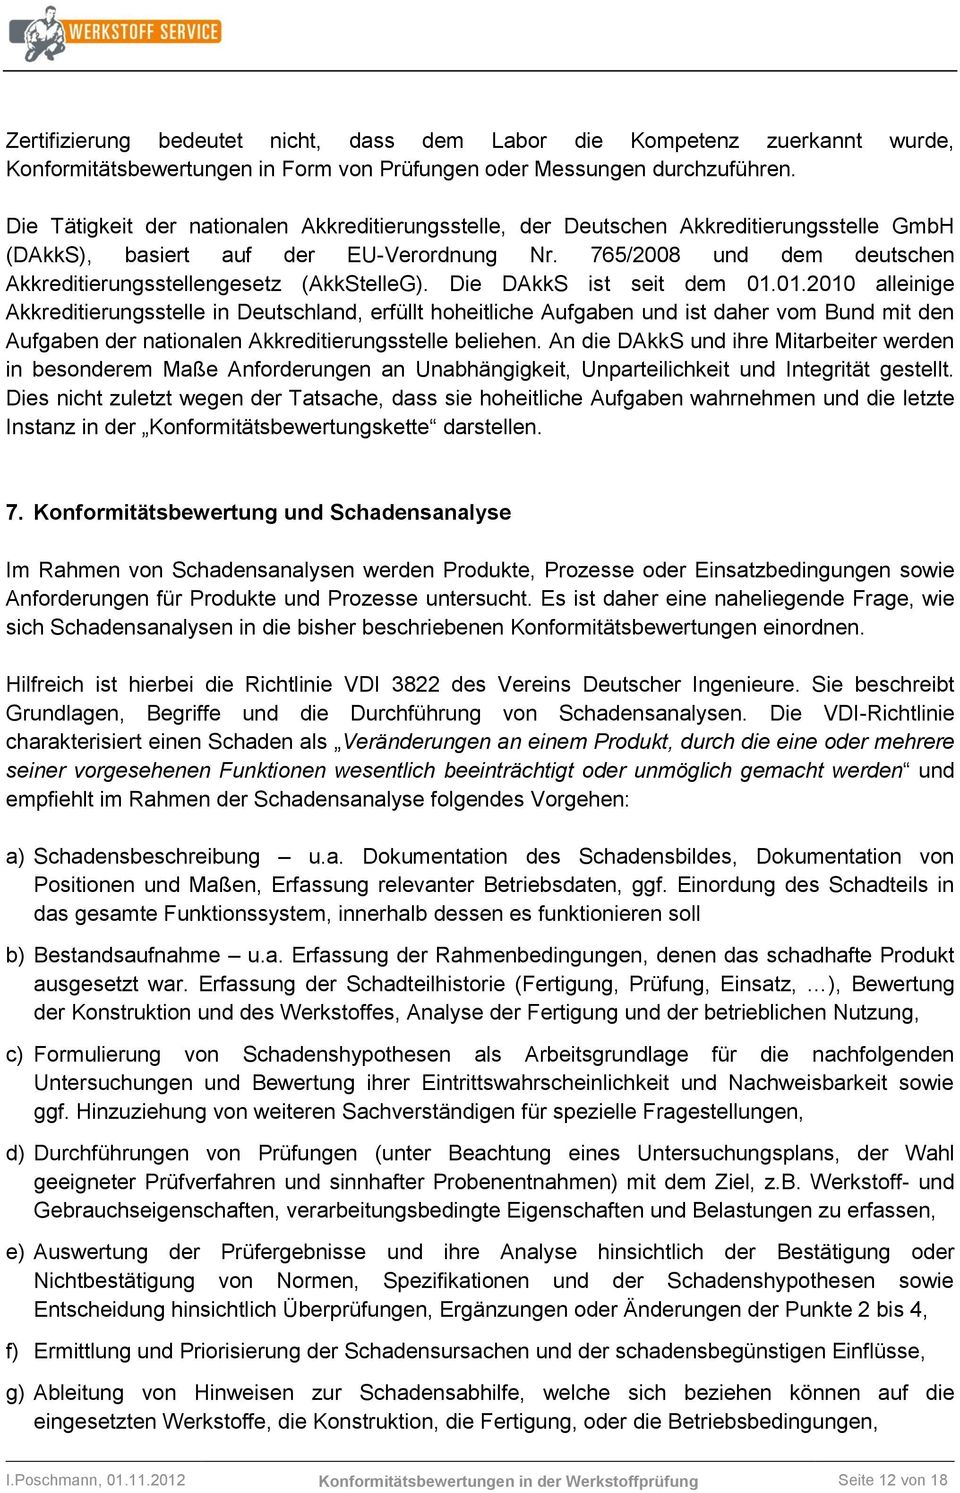 765/2008 und dem deutschen Akkreditierungsstellengesetz (AkkStelleG). Die DAkkS ist seit dem 01.